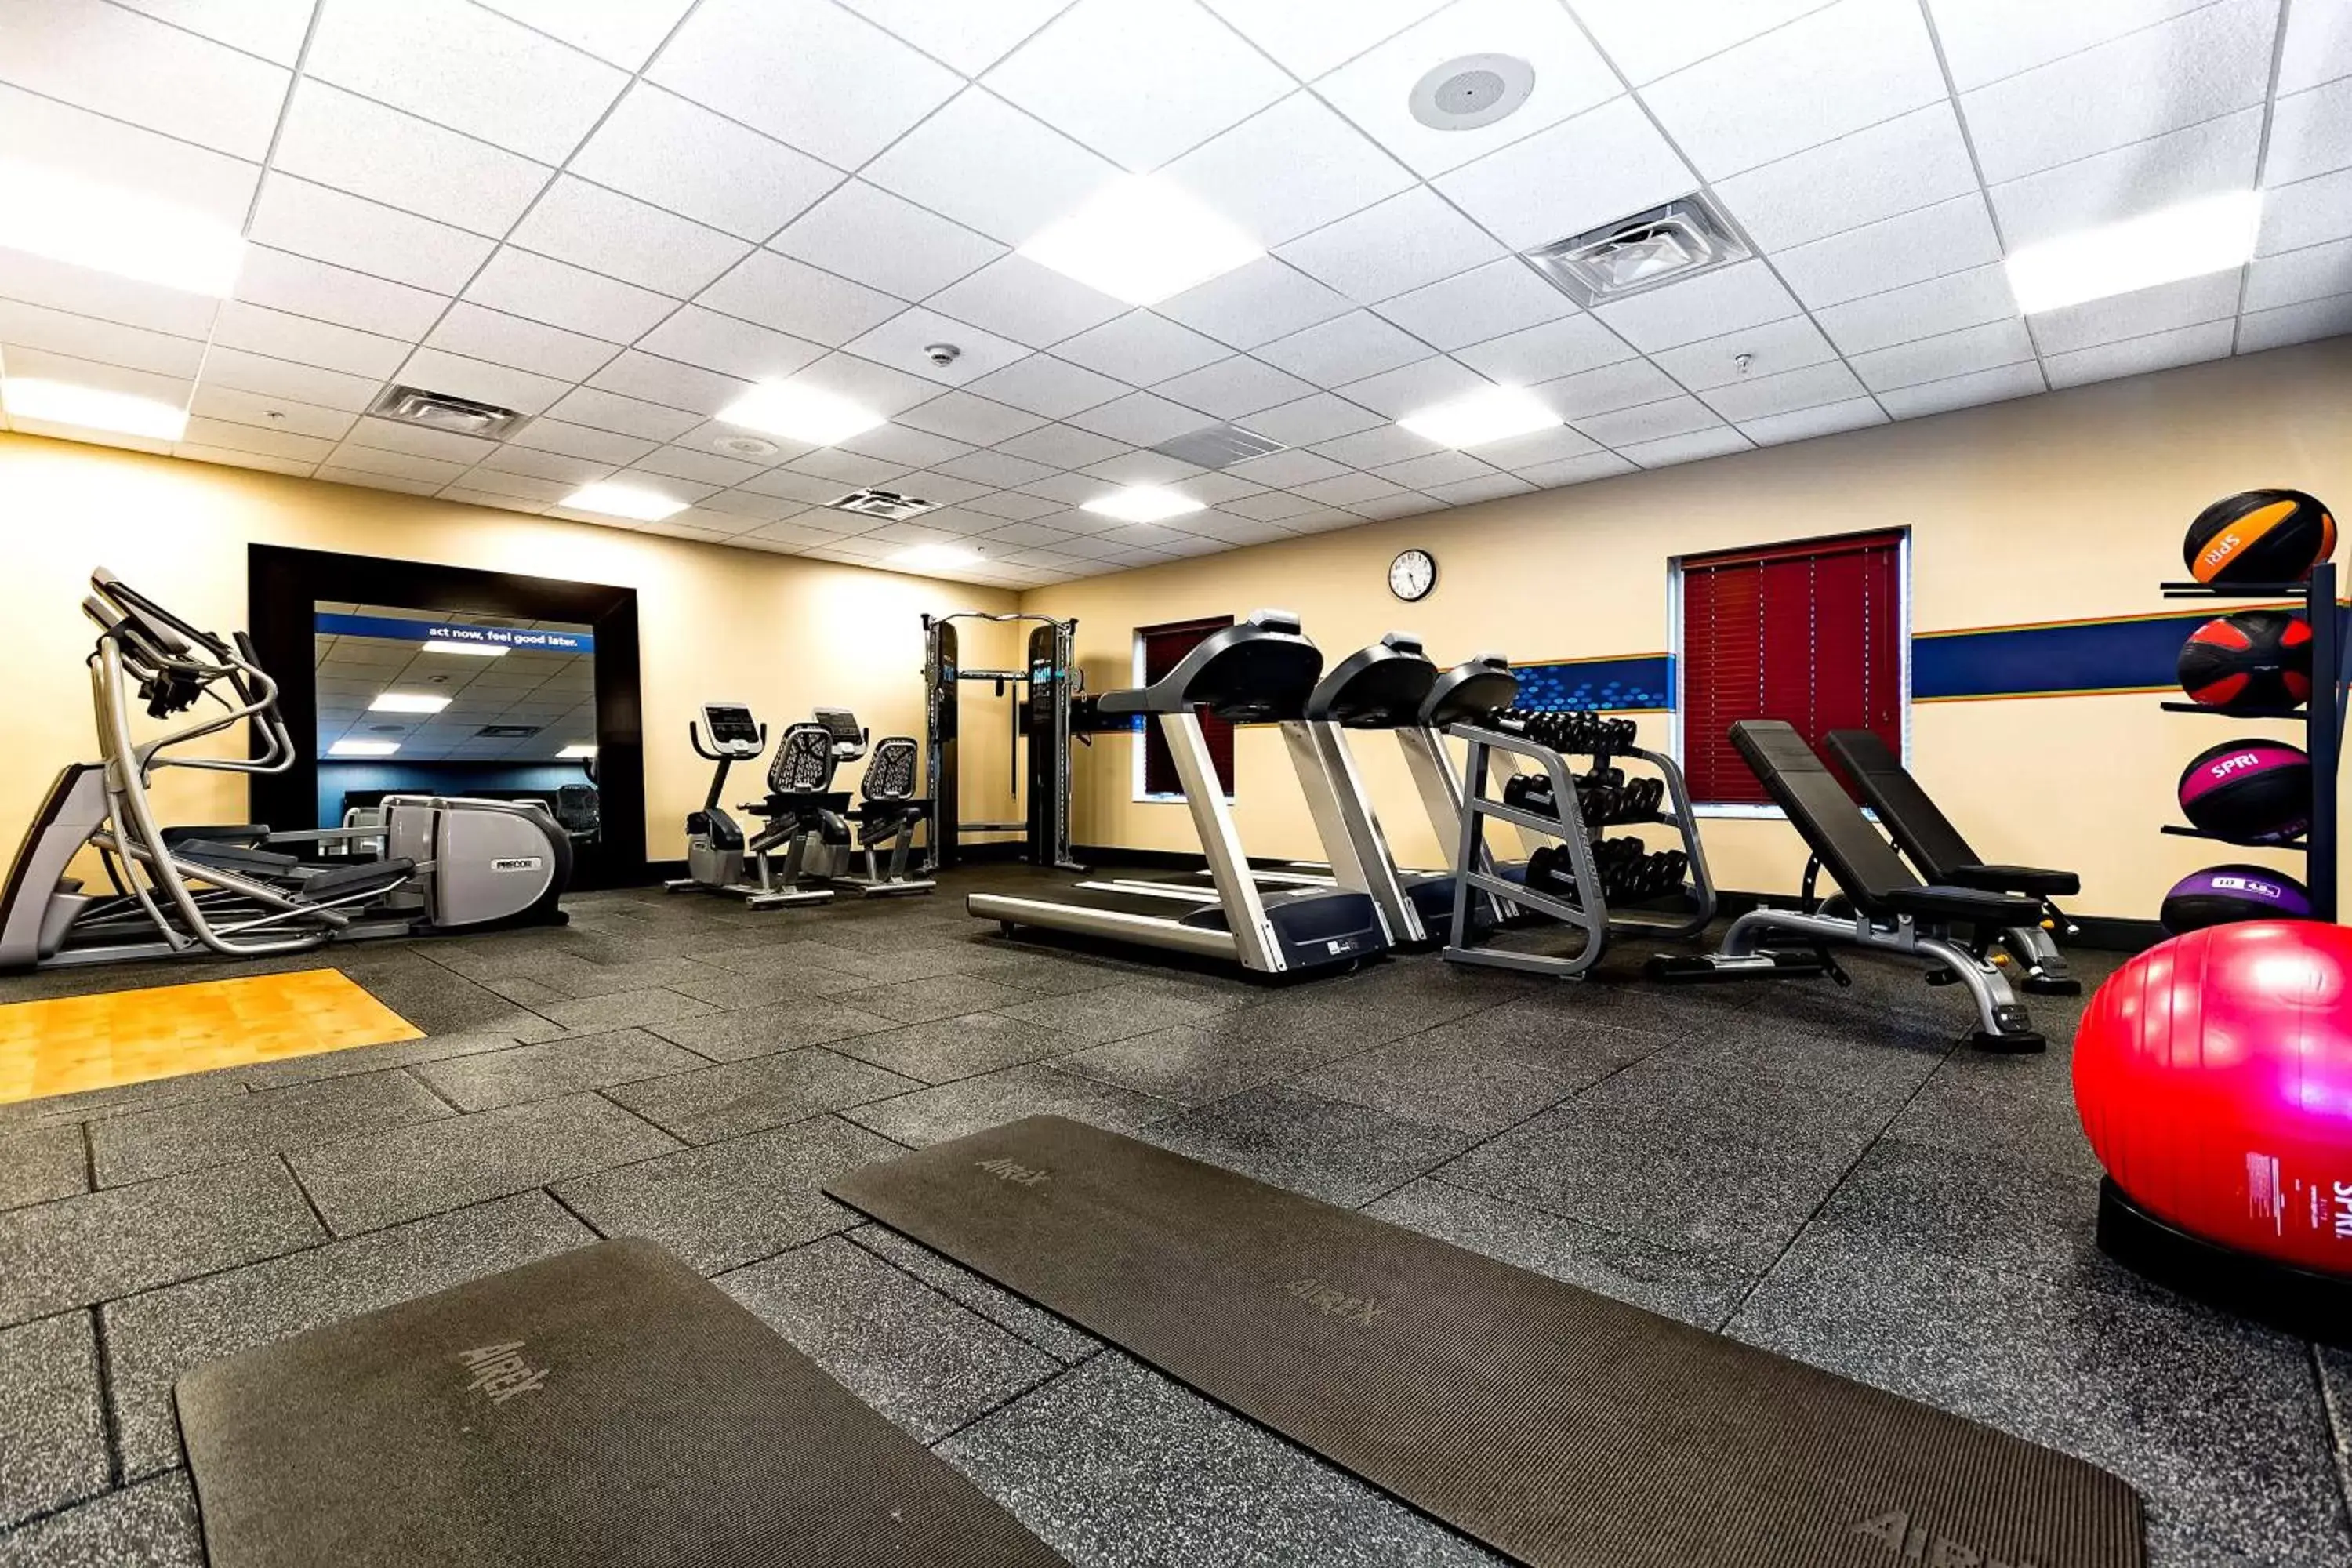 Fitness centre/facilities, Fitness Center/Facilities in Hampton Inn Lockport - Buffalo, NY